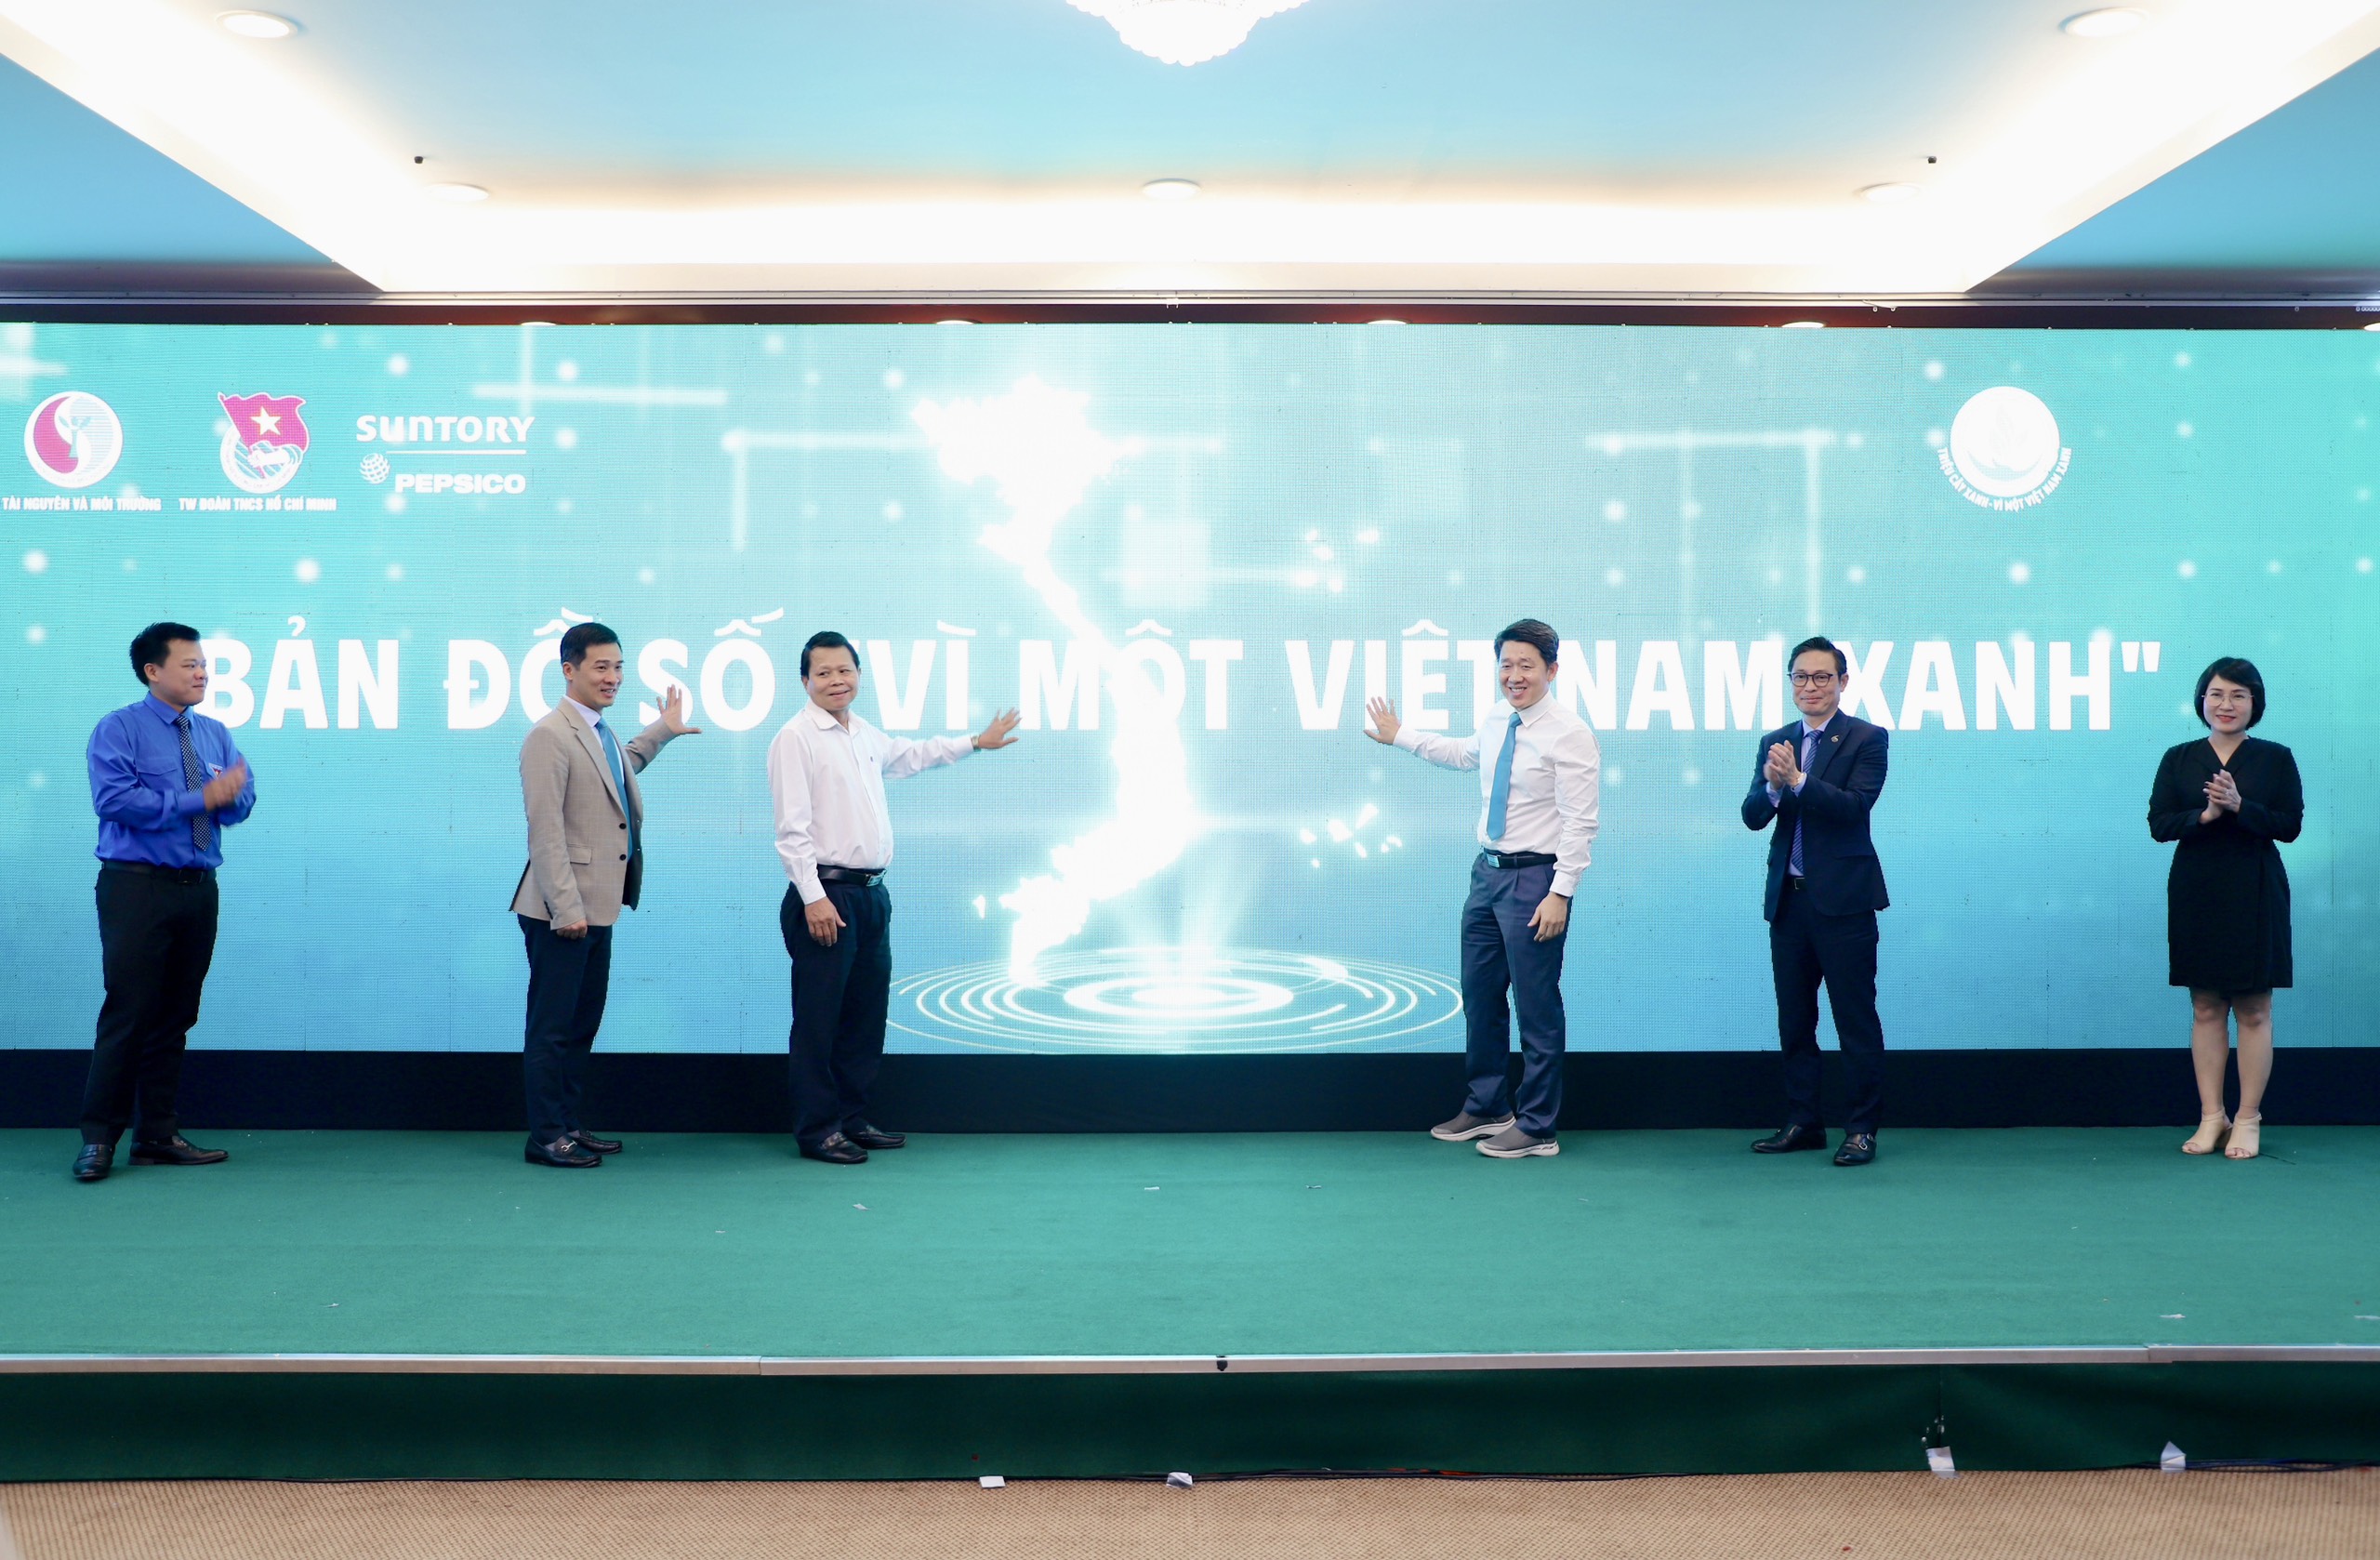 Các đại biểu cùng tham gia nhấn nút khởi động bản đồ số “Vì một Việt Nam xanh”